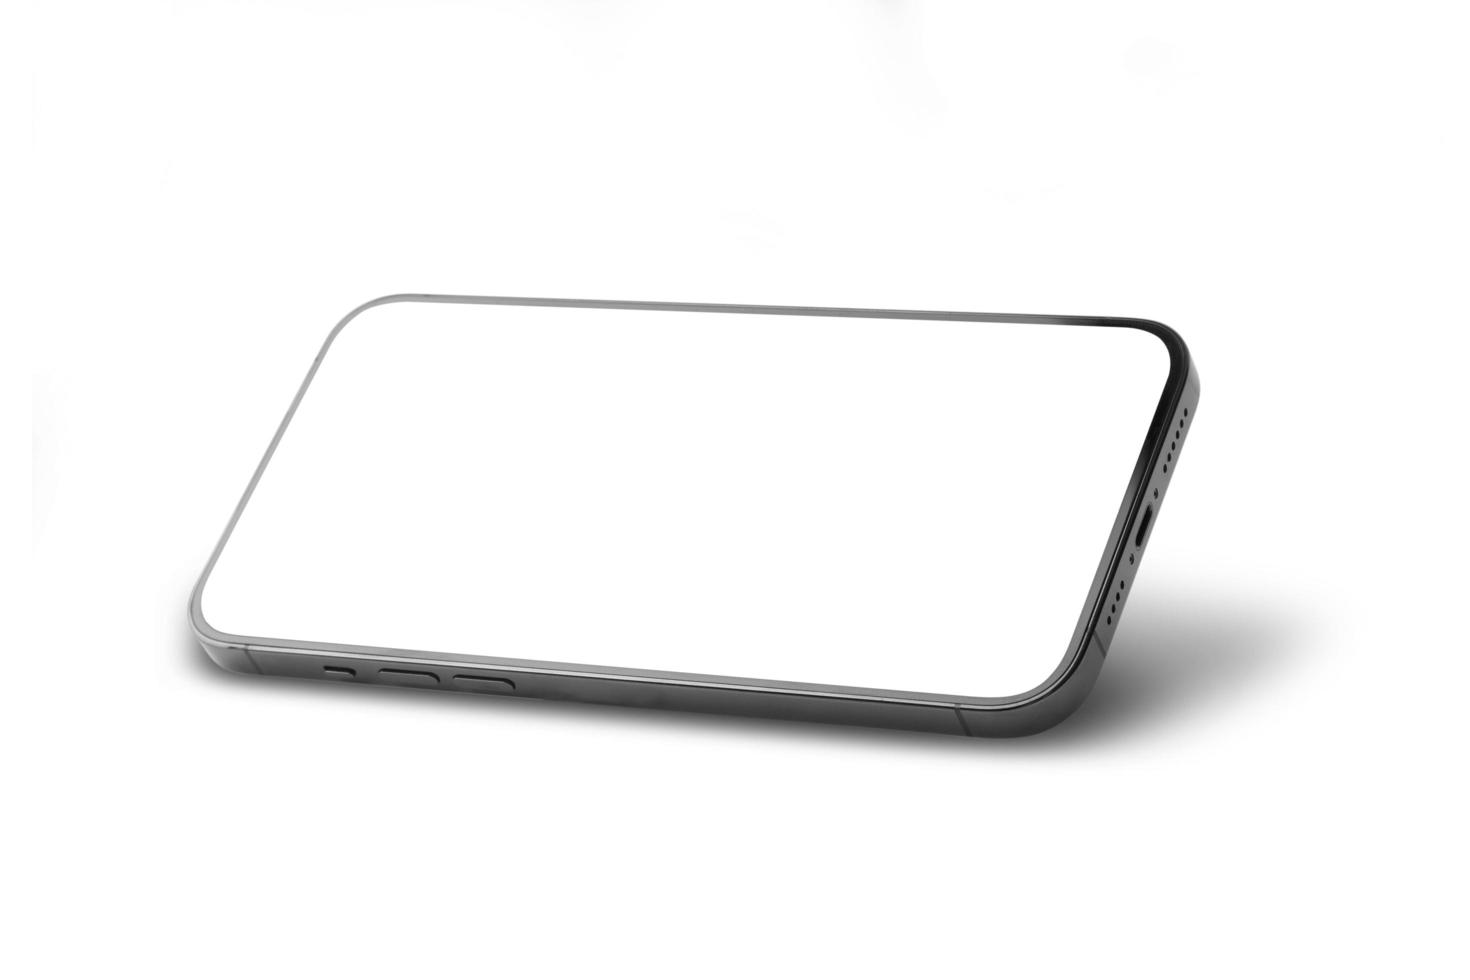 smartphone con mockup schermo vuoto isolato su sfondo bianco foto